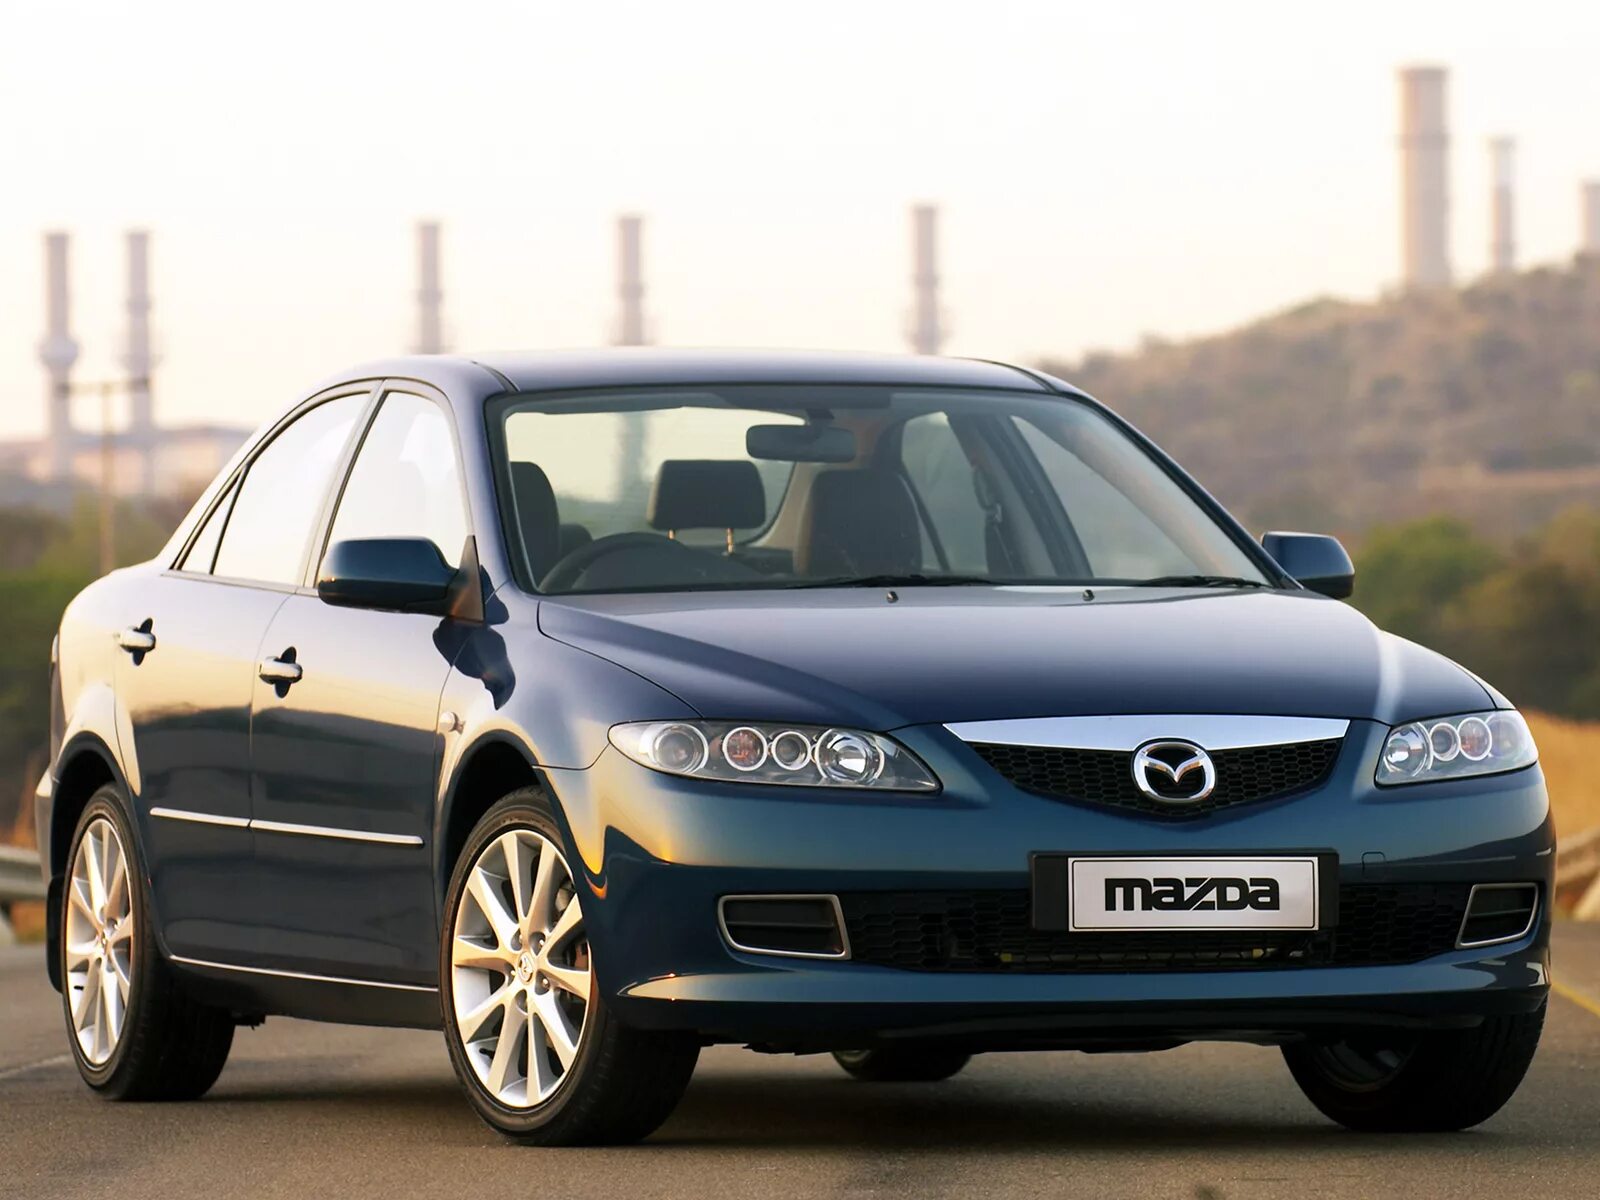 Mazda 6 gg. Mazda 6 gg 2005. Mazda 6 gg 2002. Мазда 6 седан 2005. Мазда 6 2.0 2006 года